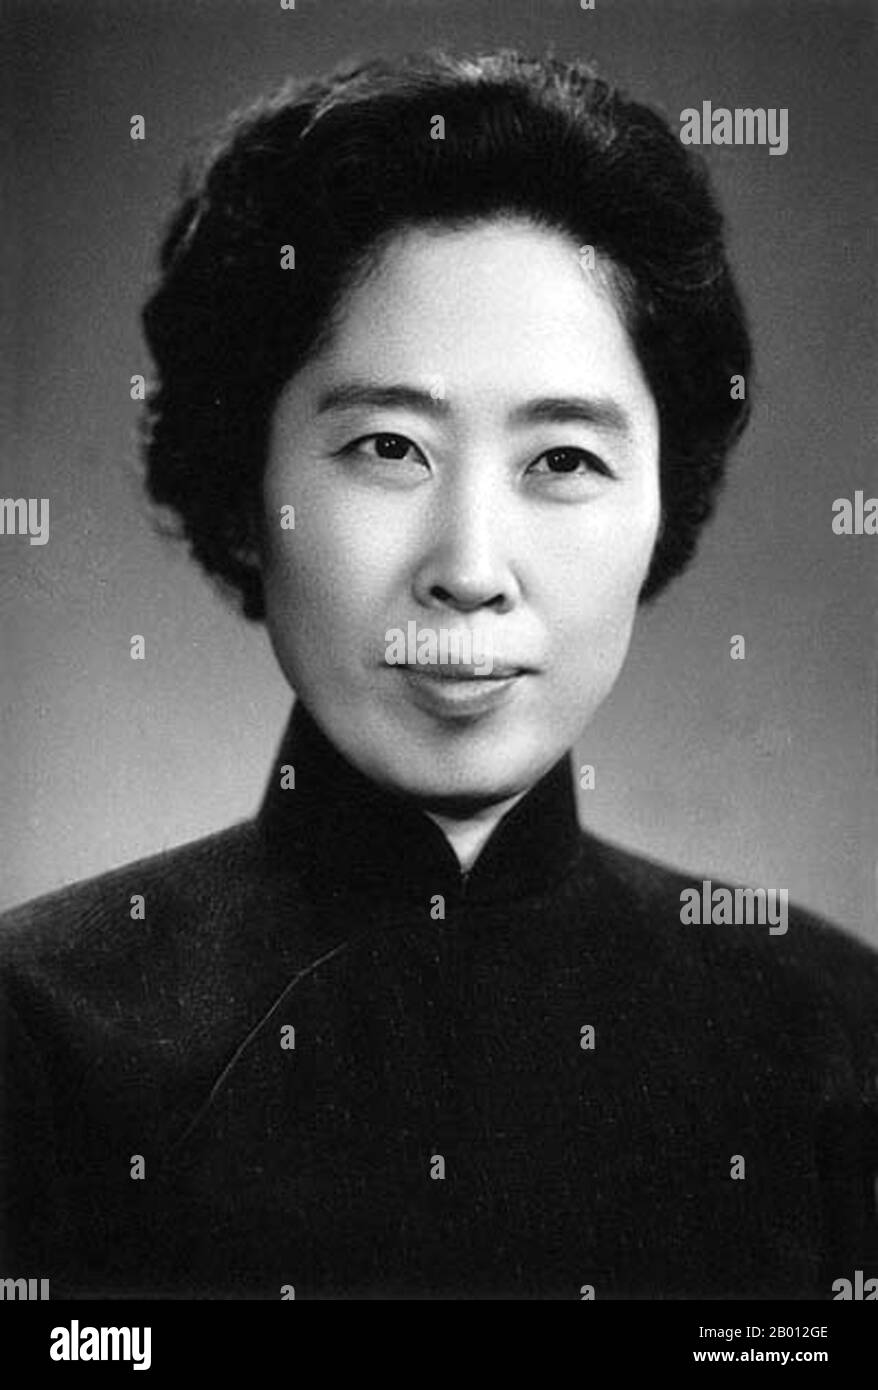 Chine : Wang Guangmei (1921-2006), première Dame de la République populaire de Chine (1959-1968), années 1950. Wang Guangmei (26 septembre 1921 - 13 octobre 2006) était un homme politique, philanthrope et première dame chinois respecté, épouse de Liu Shaoqi, qui a été président de la République populaire de 1959 à 1968. Banque D'Images